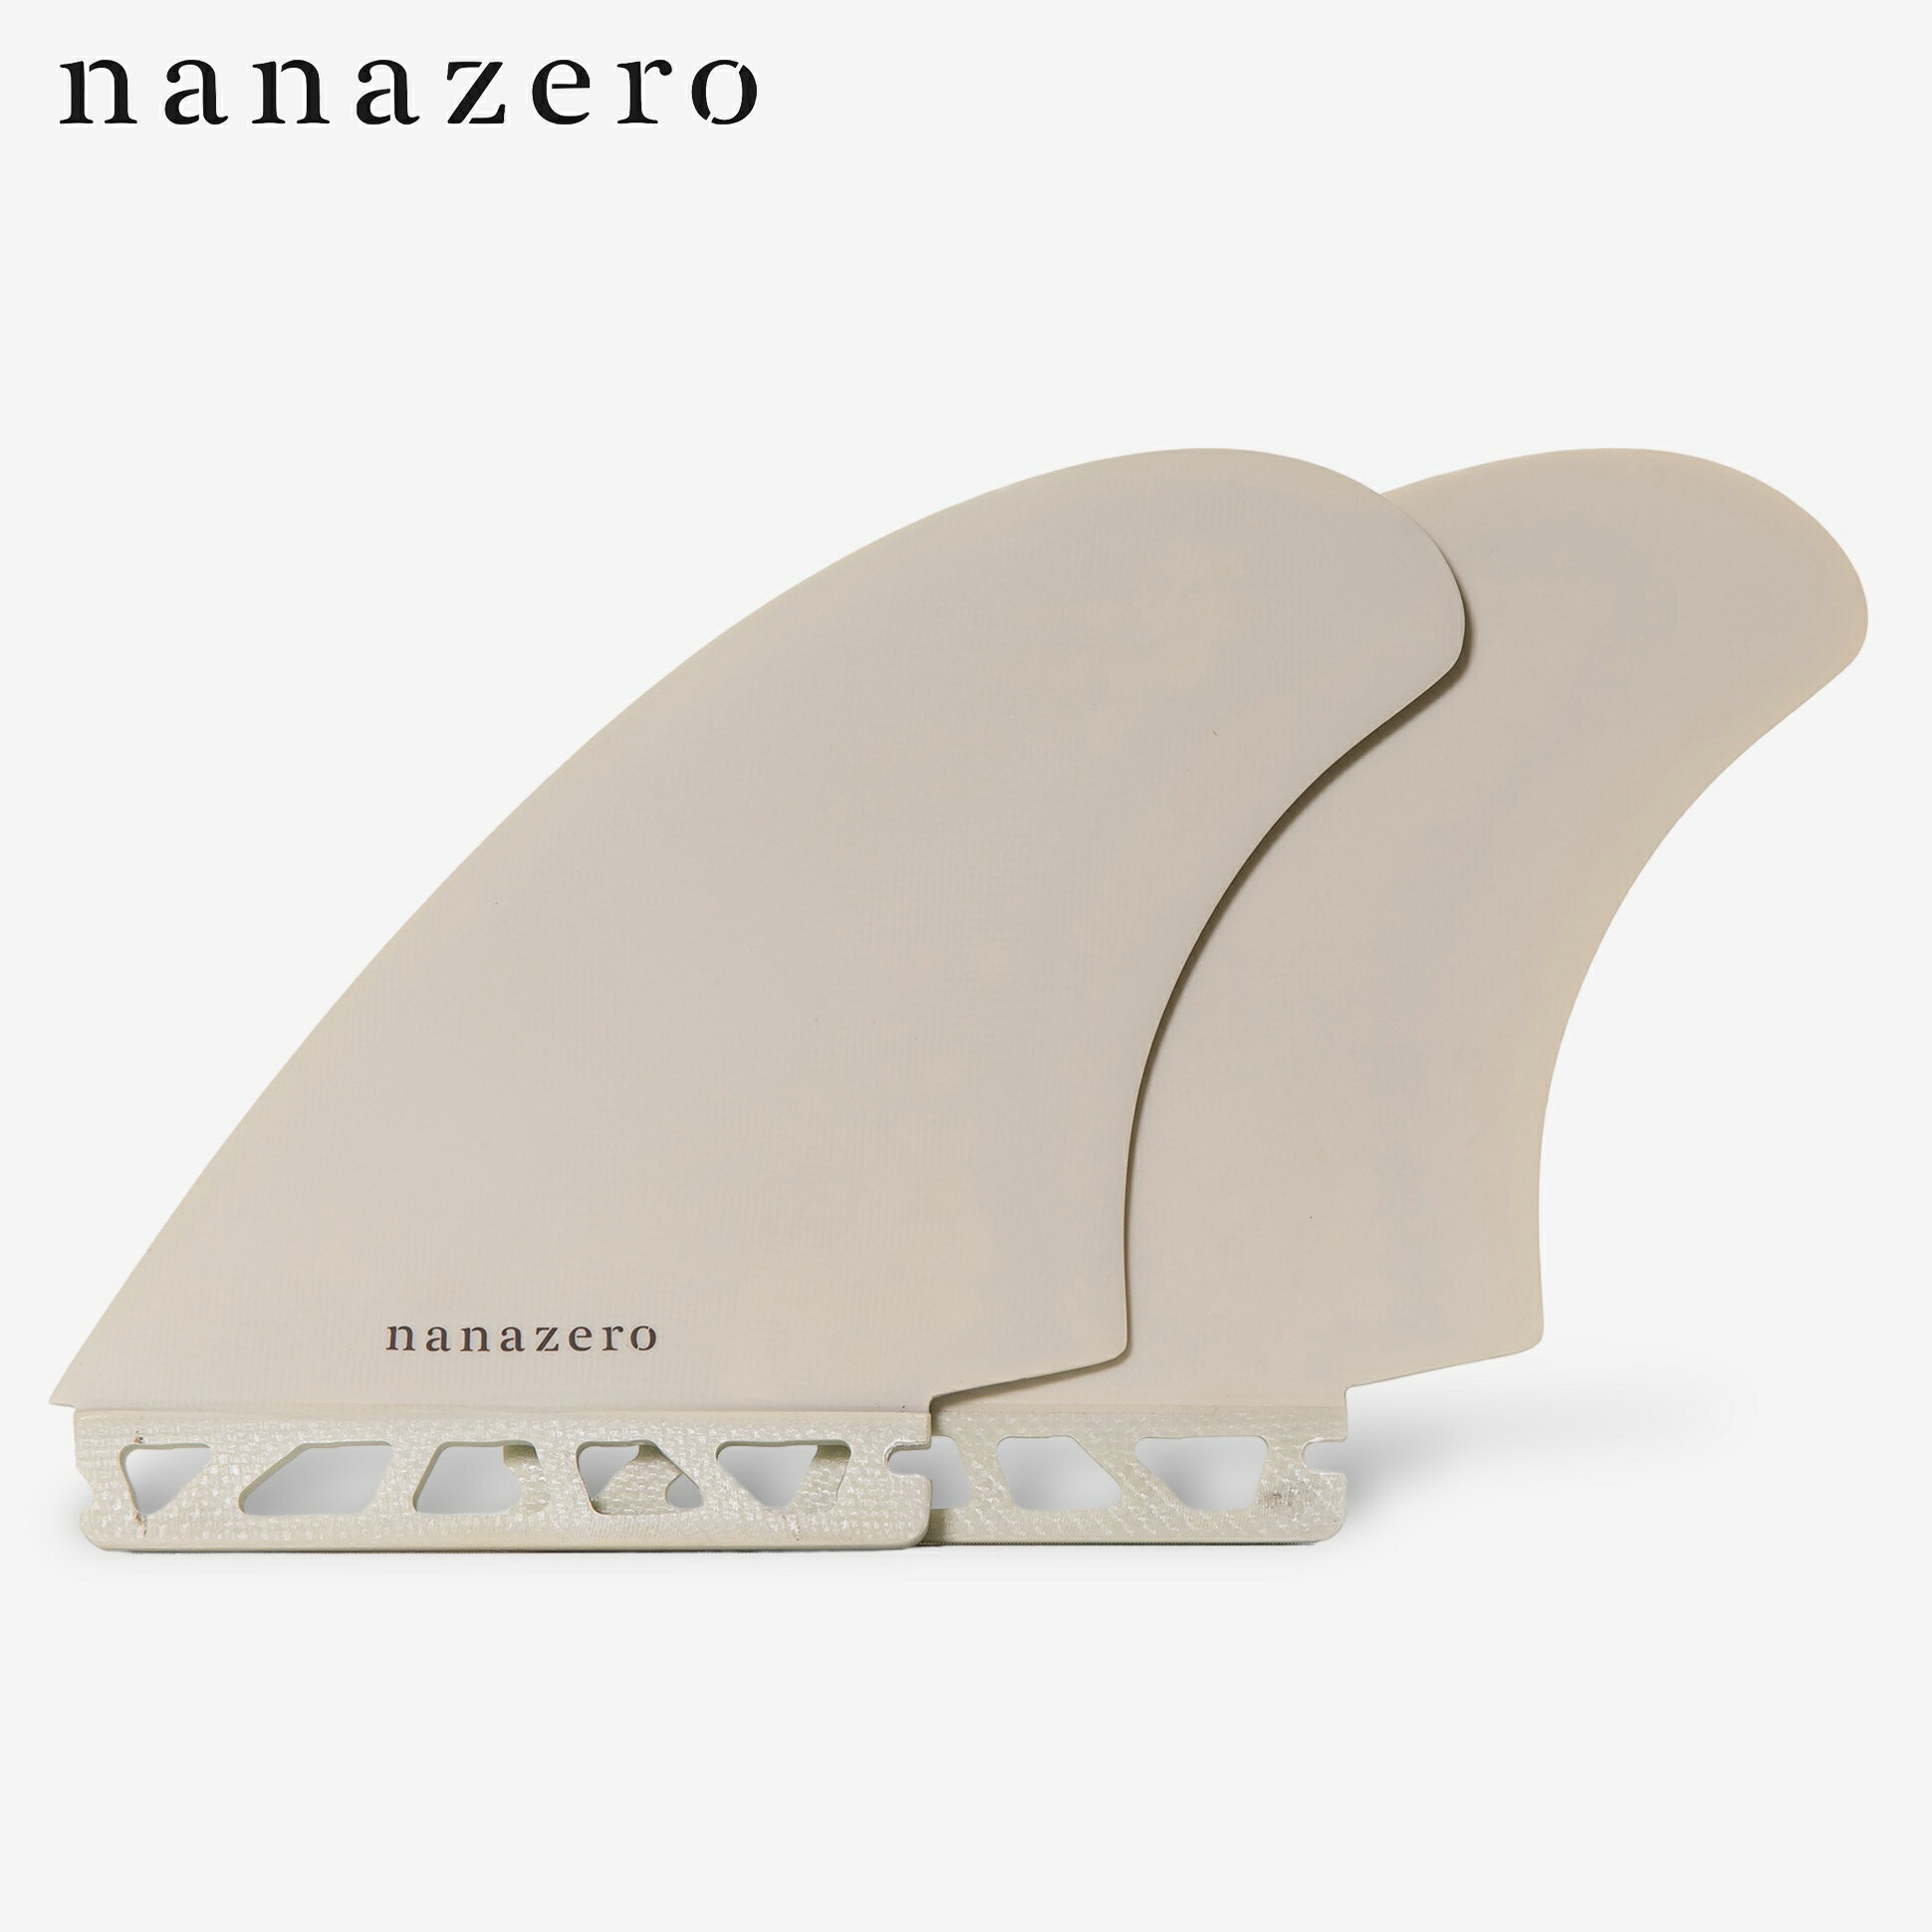 nanazero Honeycomb(ハニカム) ツインフィン 5.2" シングルタブ (サーフィン サーフボード用)